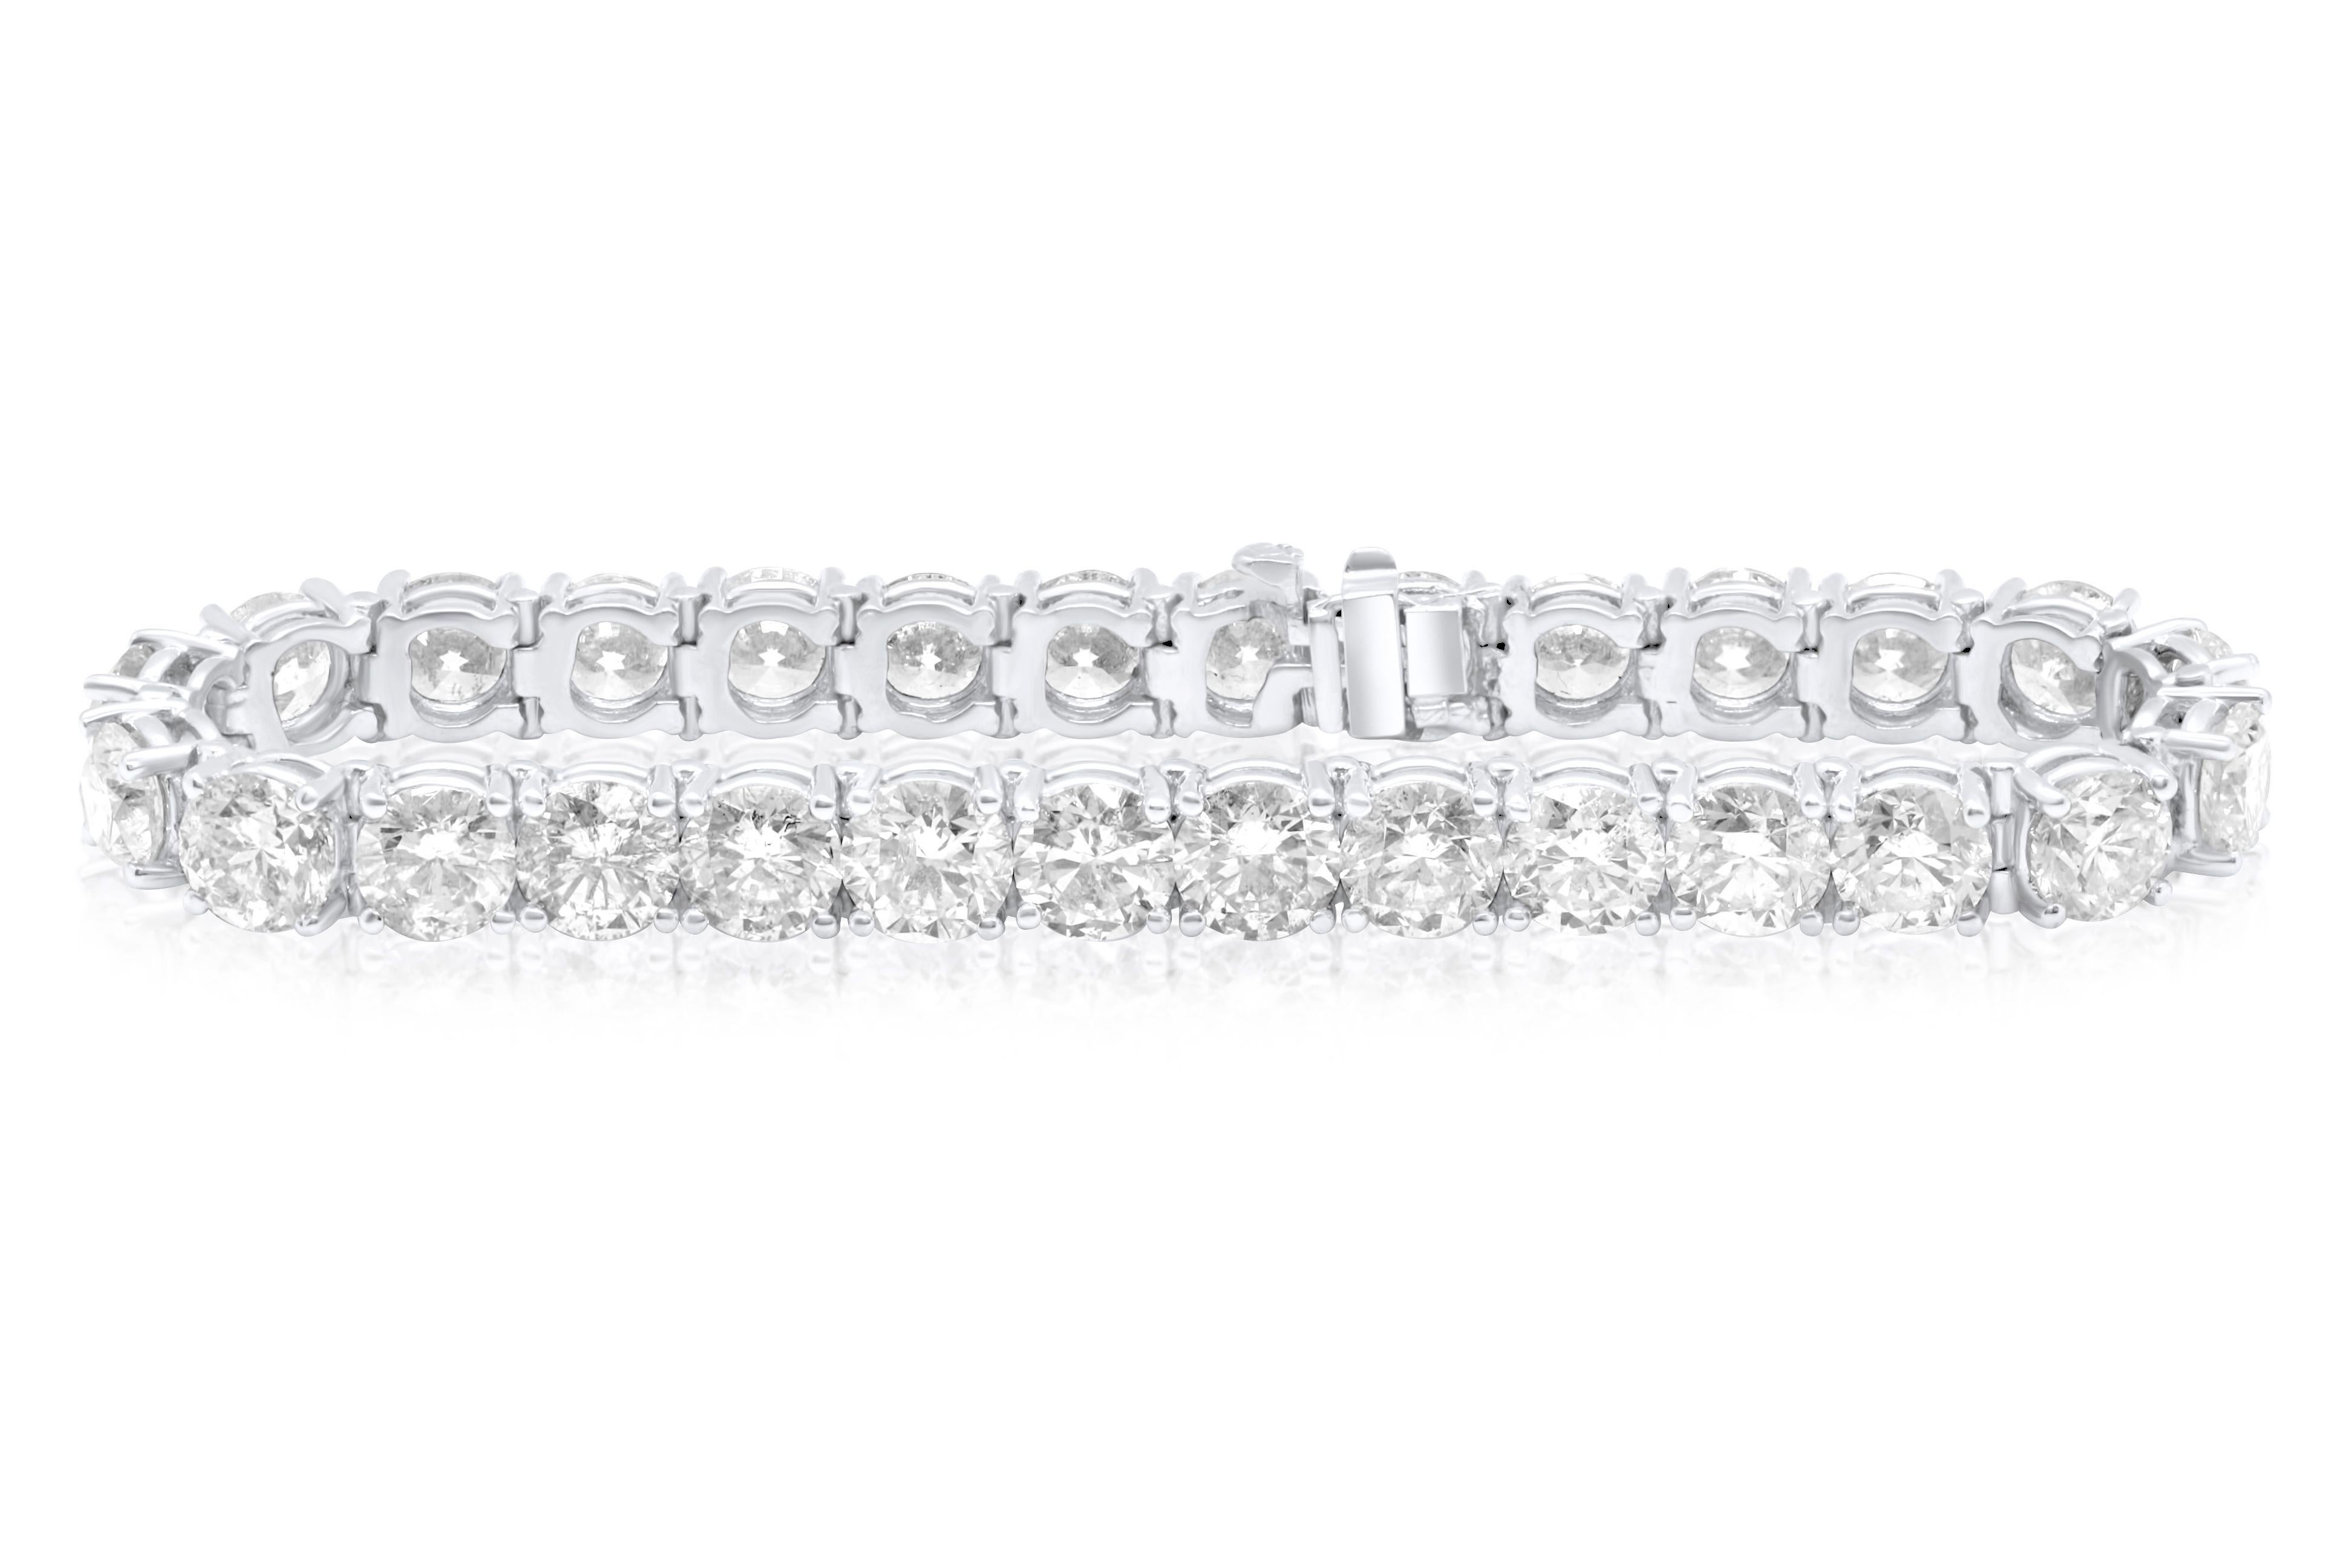 Custom 18 kt white gold 4 prong diamond tennis bracelet 21.25 carat round diamonds 0.70 each carat 30 stones FG color SI clarity.  Excellent Cut.